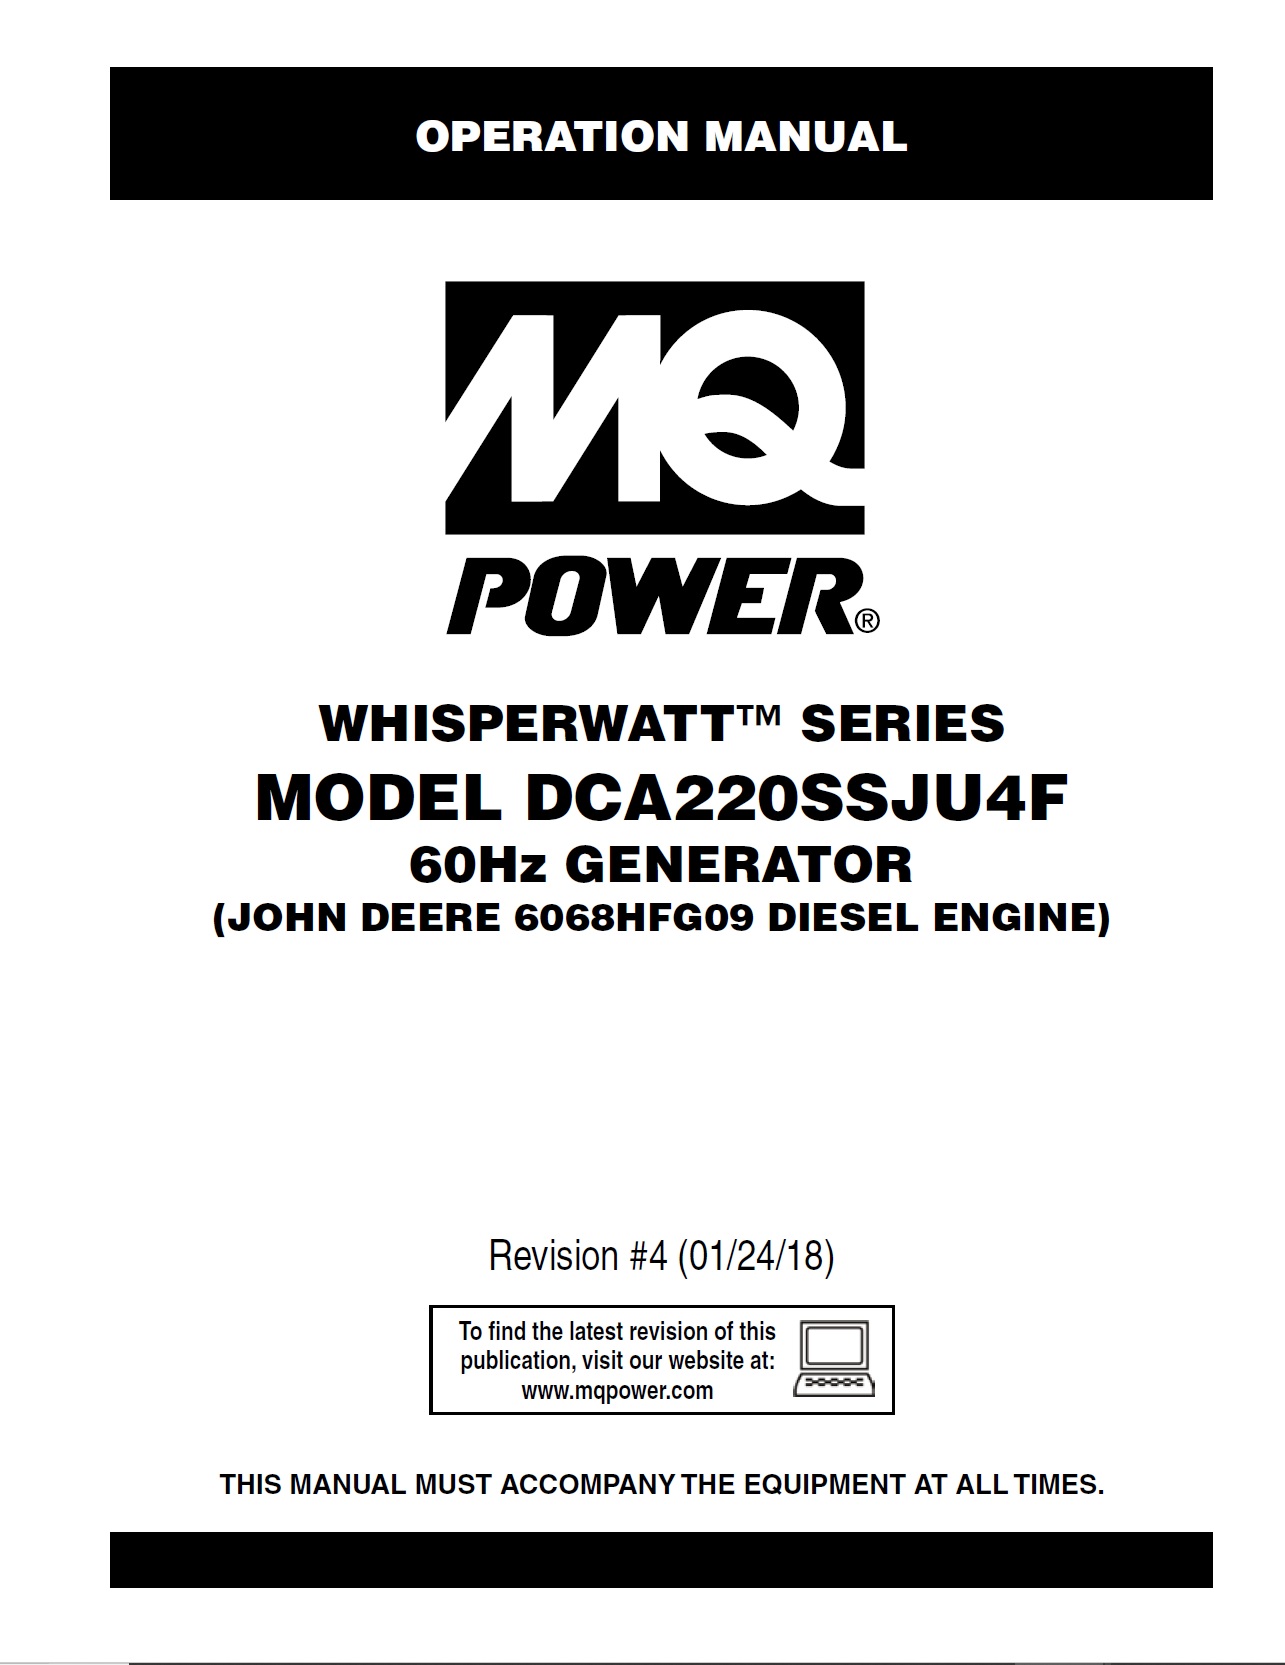 Generators-portable-supersilent-DCA220SSJU4F-rev-4-60-hz-op-manual